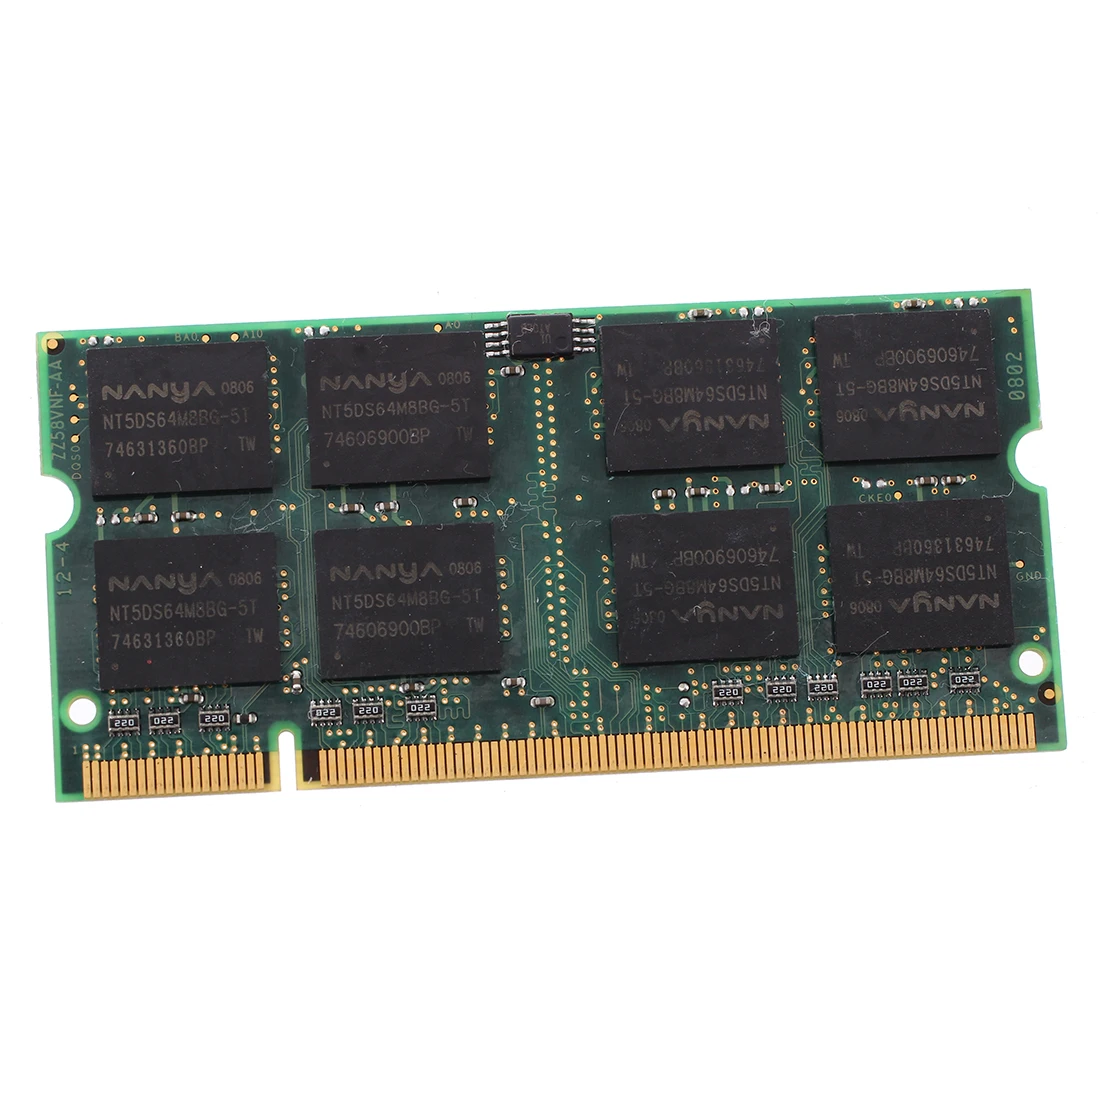 1 Гб оперативной памяти PC2100 DDR CL2.5 DIMM 266MHz 200-pin ноутбук